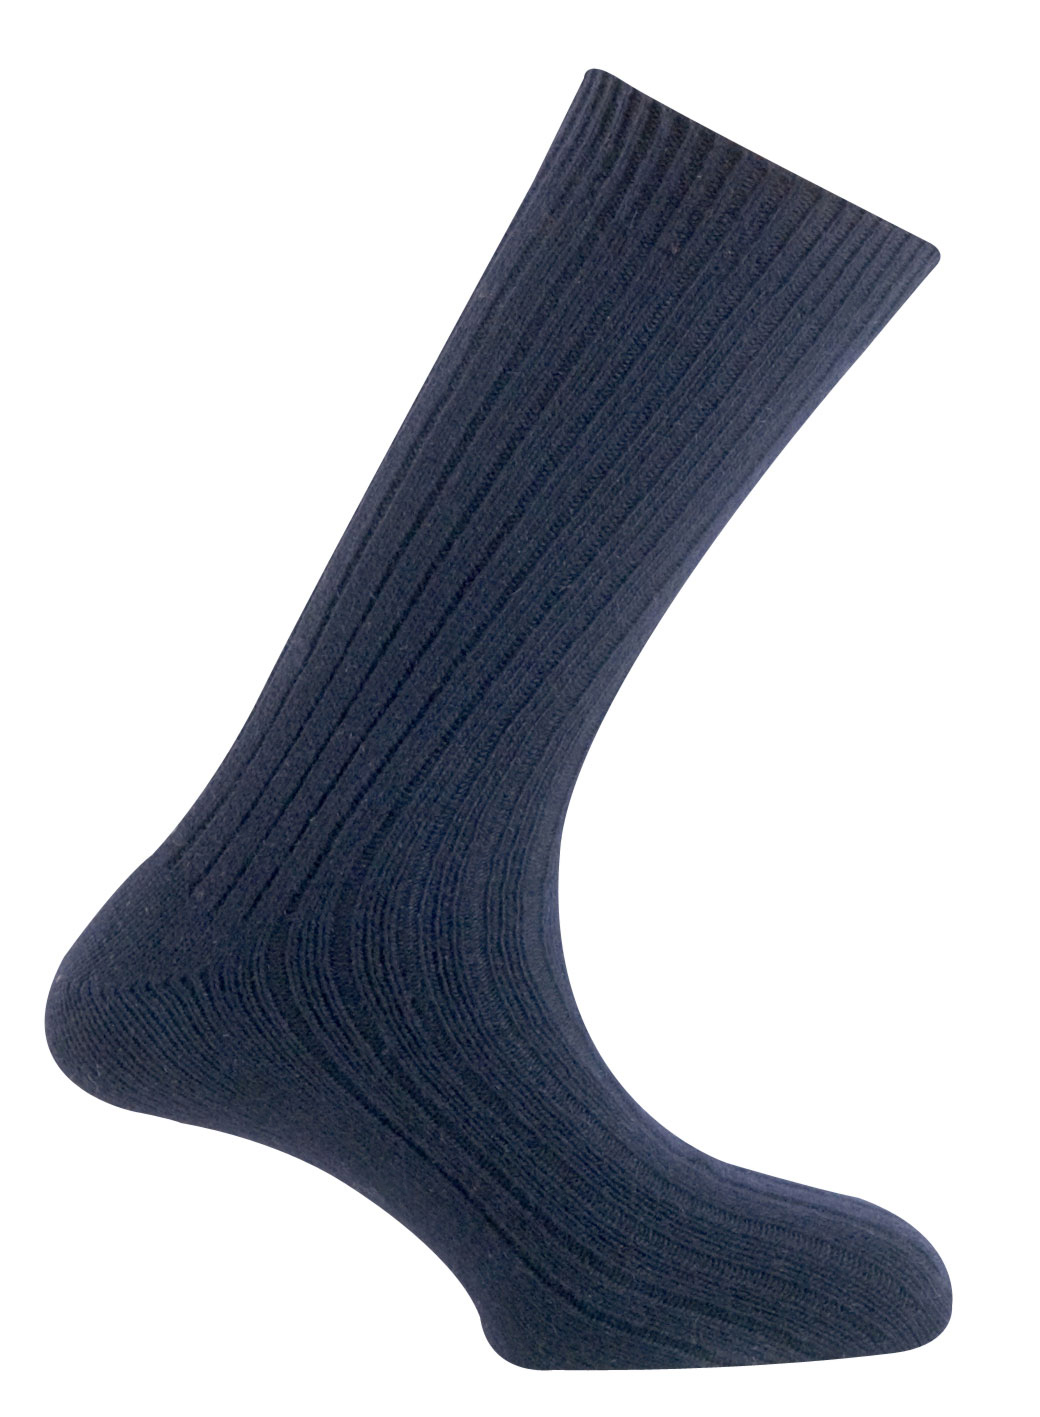 100 Primitive носки, 12-чёрный Mund, цвет чёрный 3, размер M - фото 1